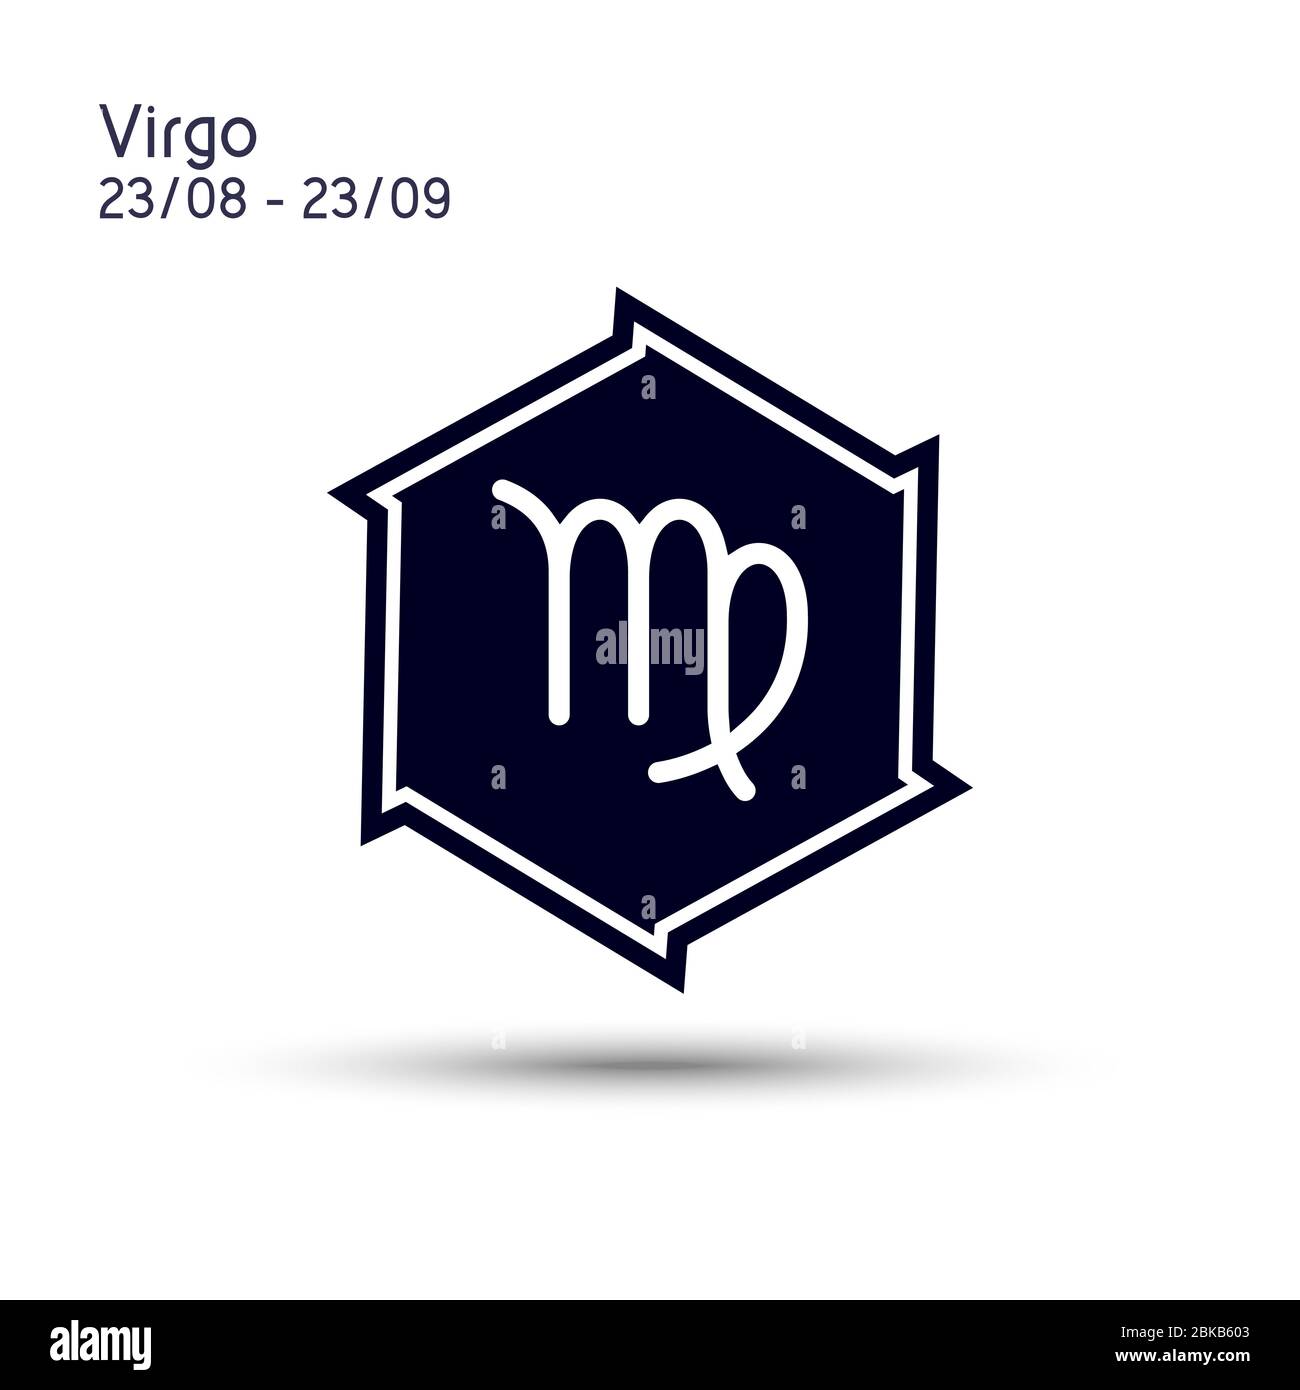 Segno zodiacale di Virgo in una stella a sei punte con bordi taglienti. Design piatto con icone. Simbolo astrologico isolato su sfondo bianco. Vettore 6 punti stella. Illustrazione Vettoriale